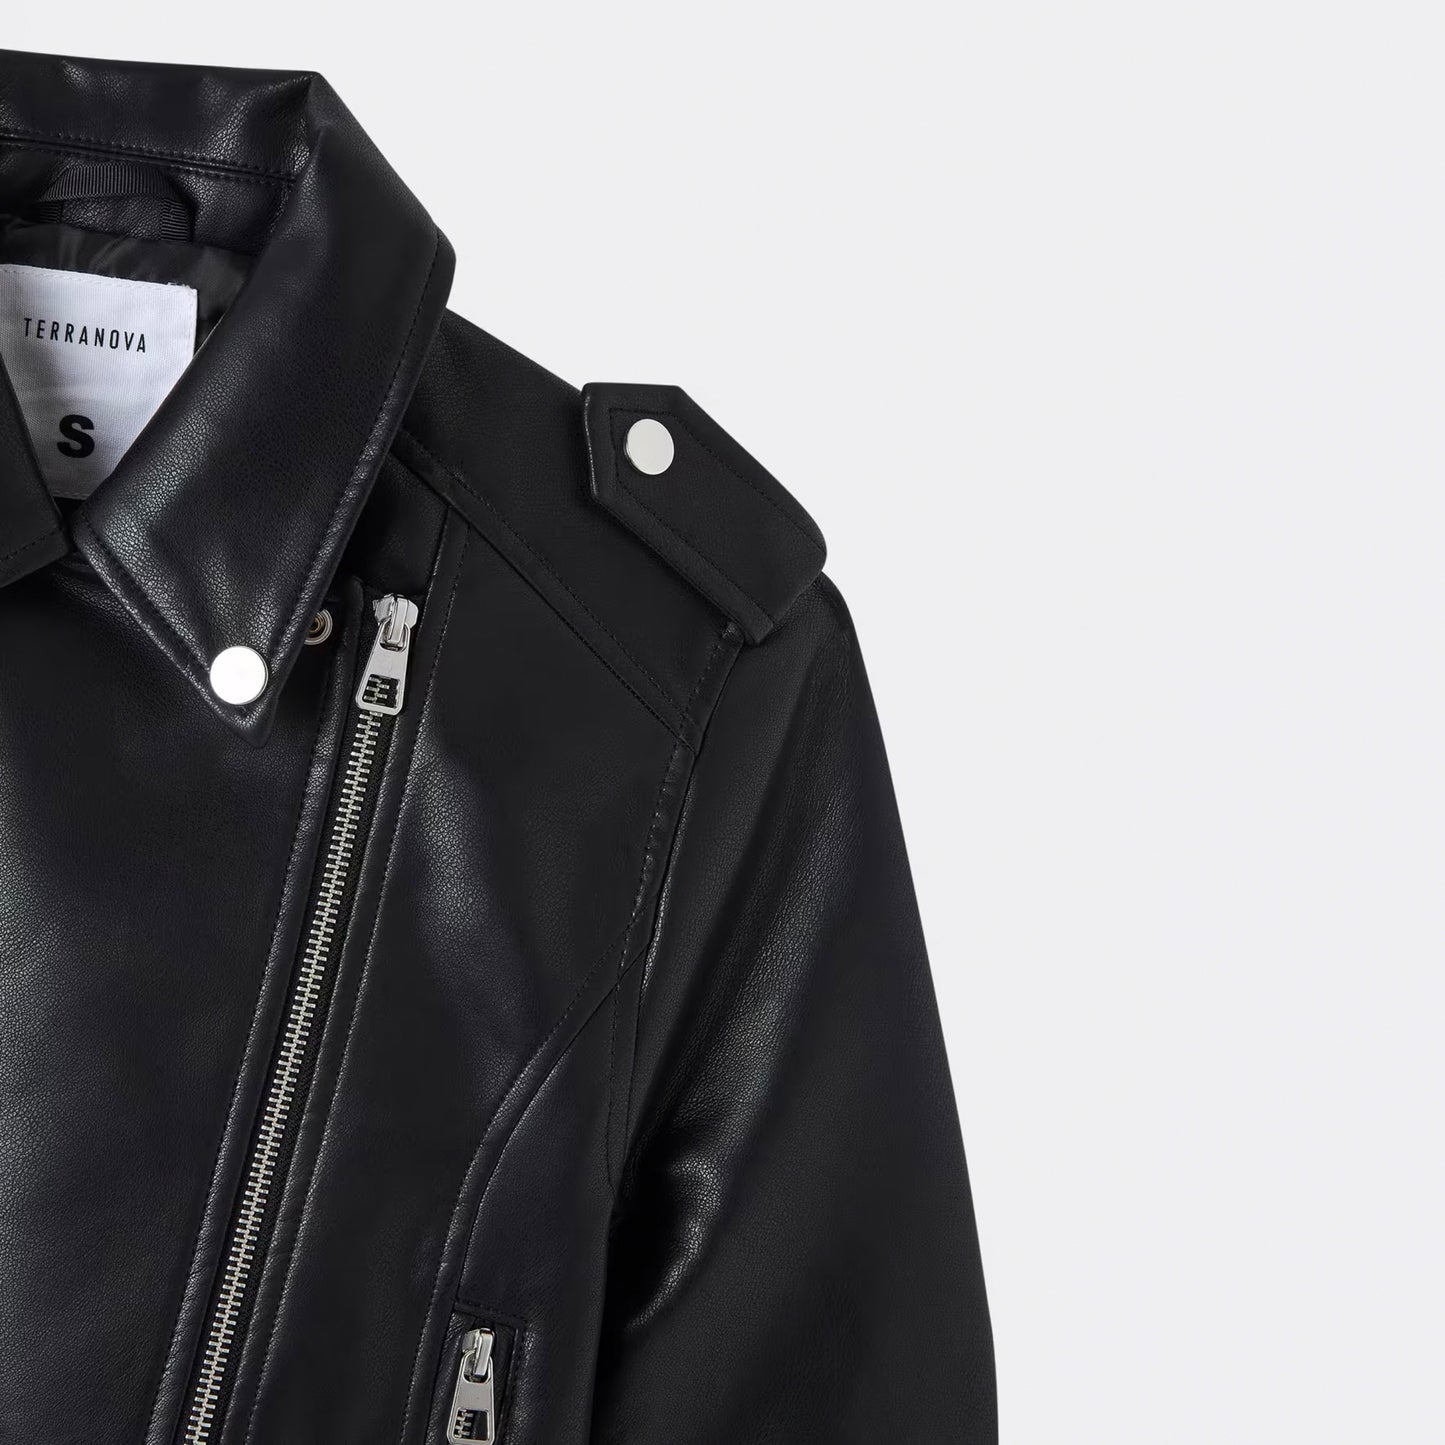 Imitation Leather Jacket